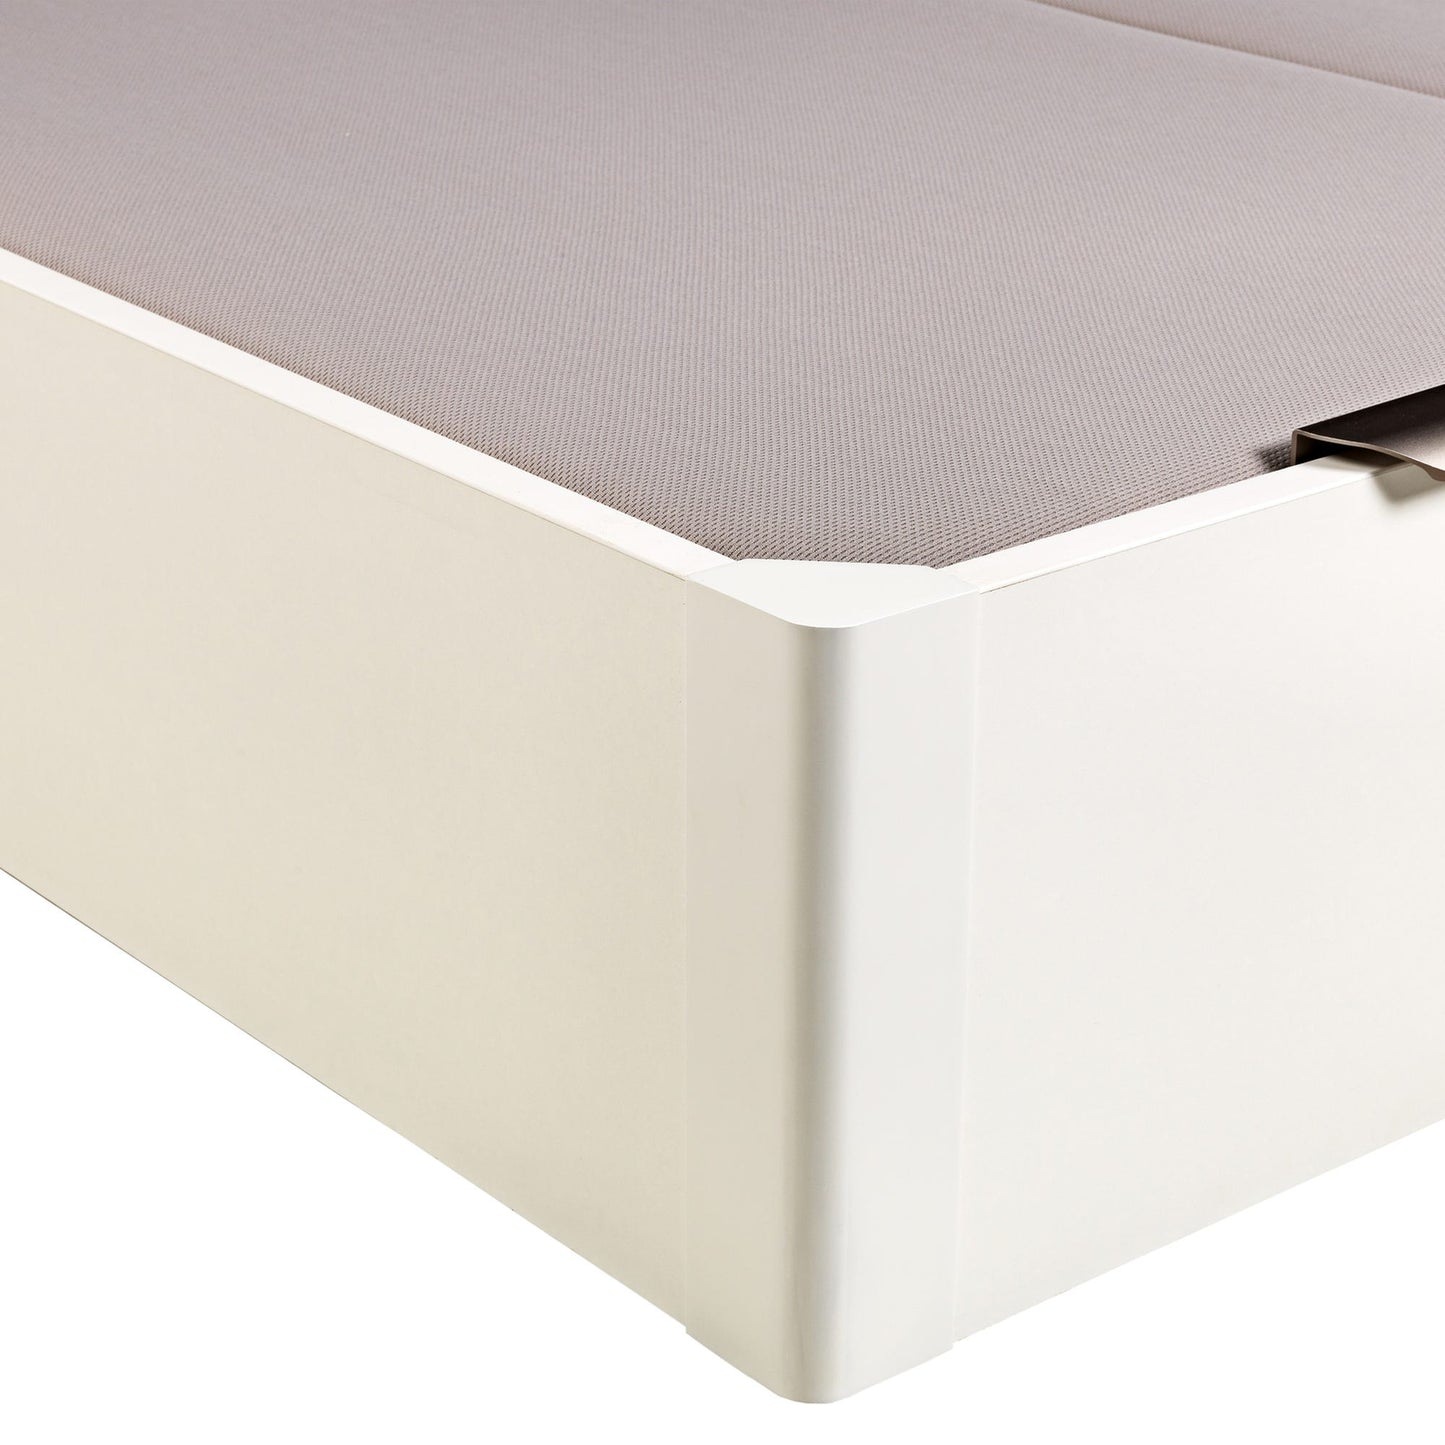 Canapé abatible de madera de tapa doble de color blanco - DESIGN - 200x190